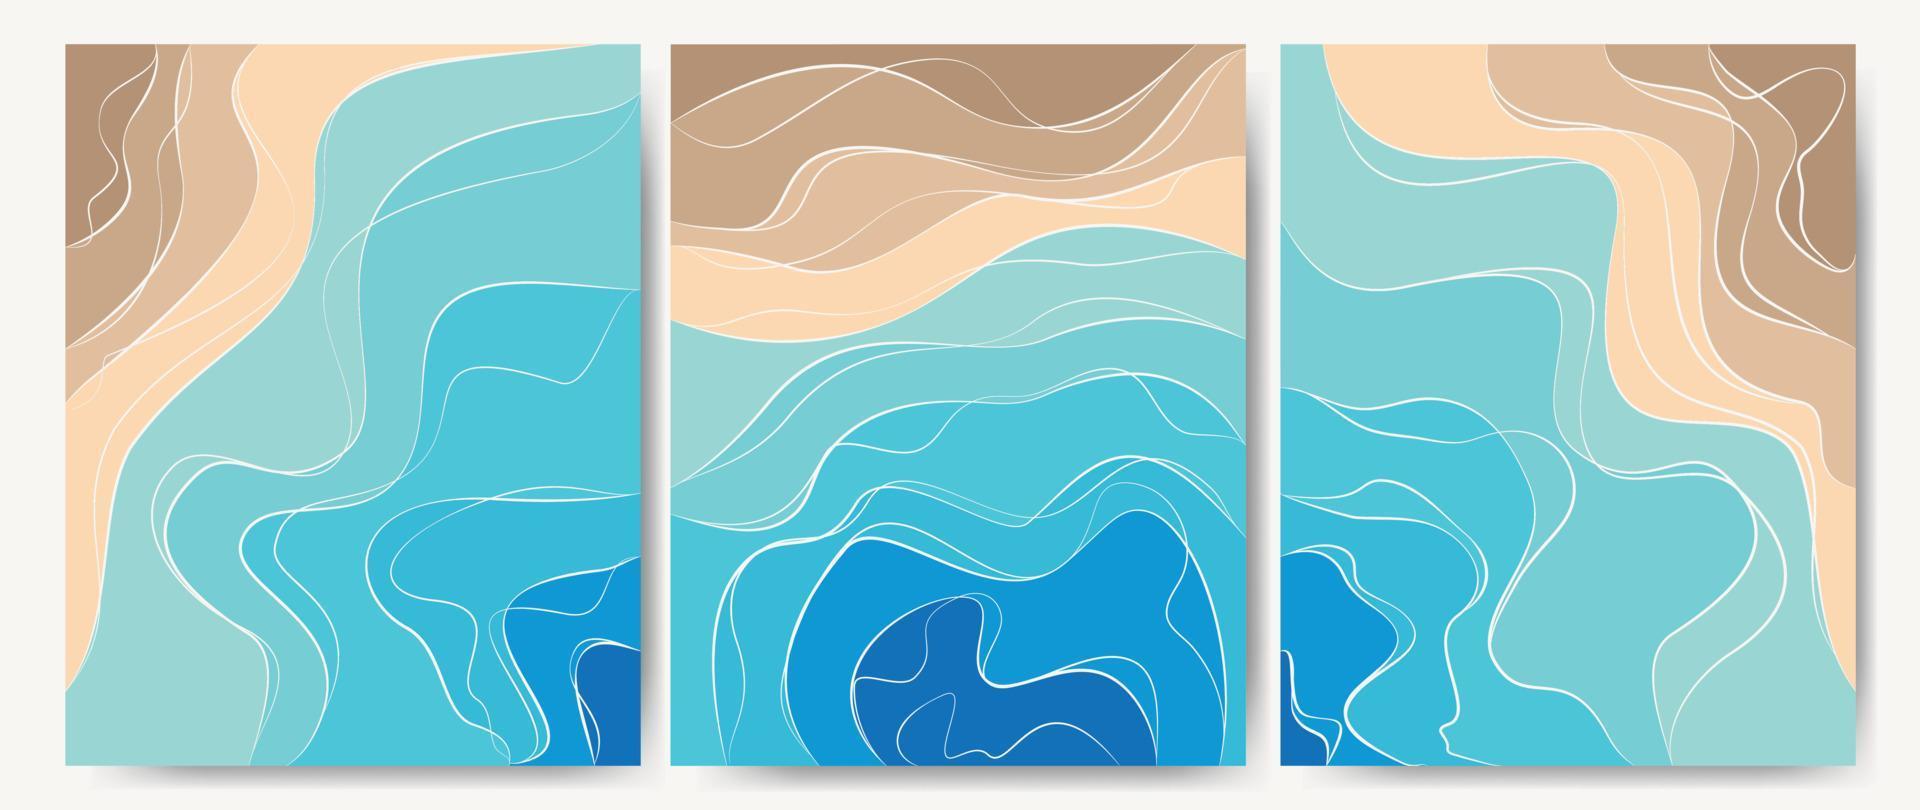 abstrakter Hintergrund sonniger Meeresstrand. Thema Sommerzeit. Template Design Textur Wasser und Sand mit einem Muster aus Wellenlinien. ideal für Abdeckungen, Stoffdrucke, Tapeten. Vektor. vektor